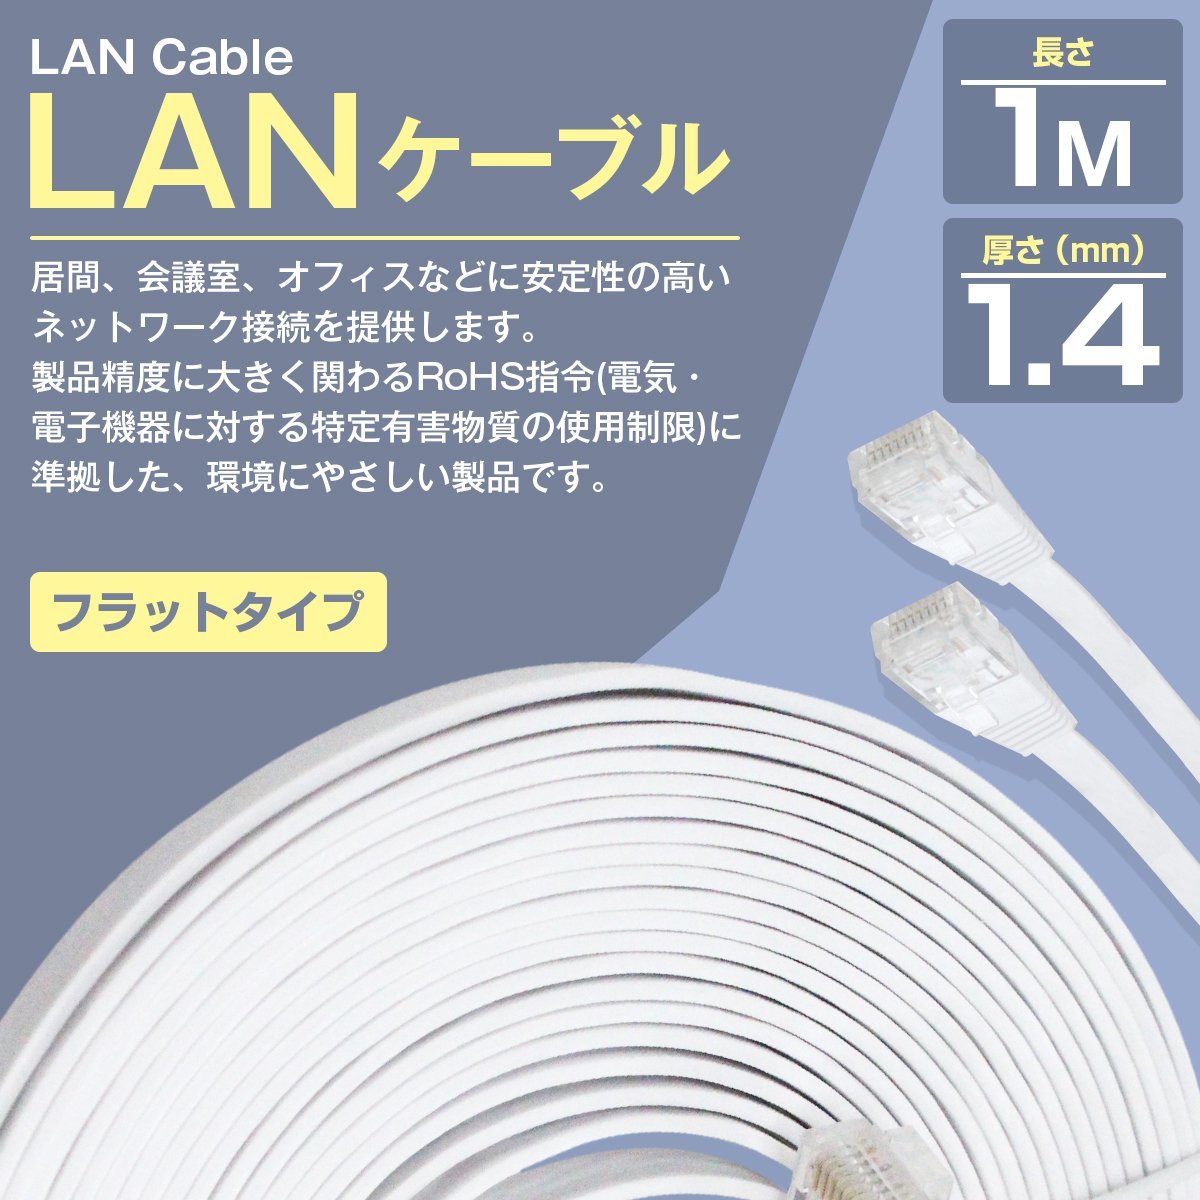 12周年記念イベントが LANケーブル CAT6 1m ホワイト 白 フラットケーブル カテゴリ6 パソコン 有線 薄型 スリム コンパクト 